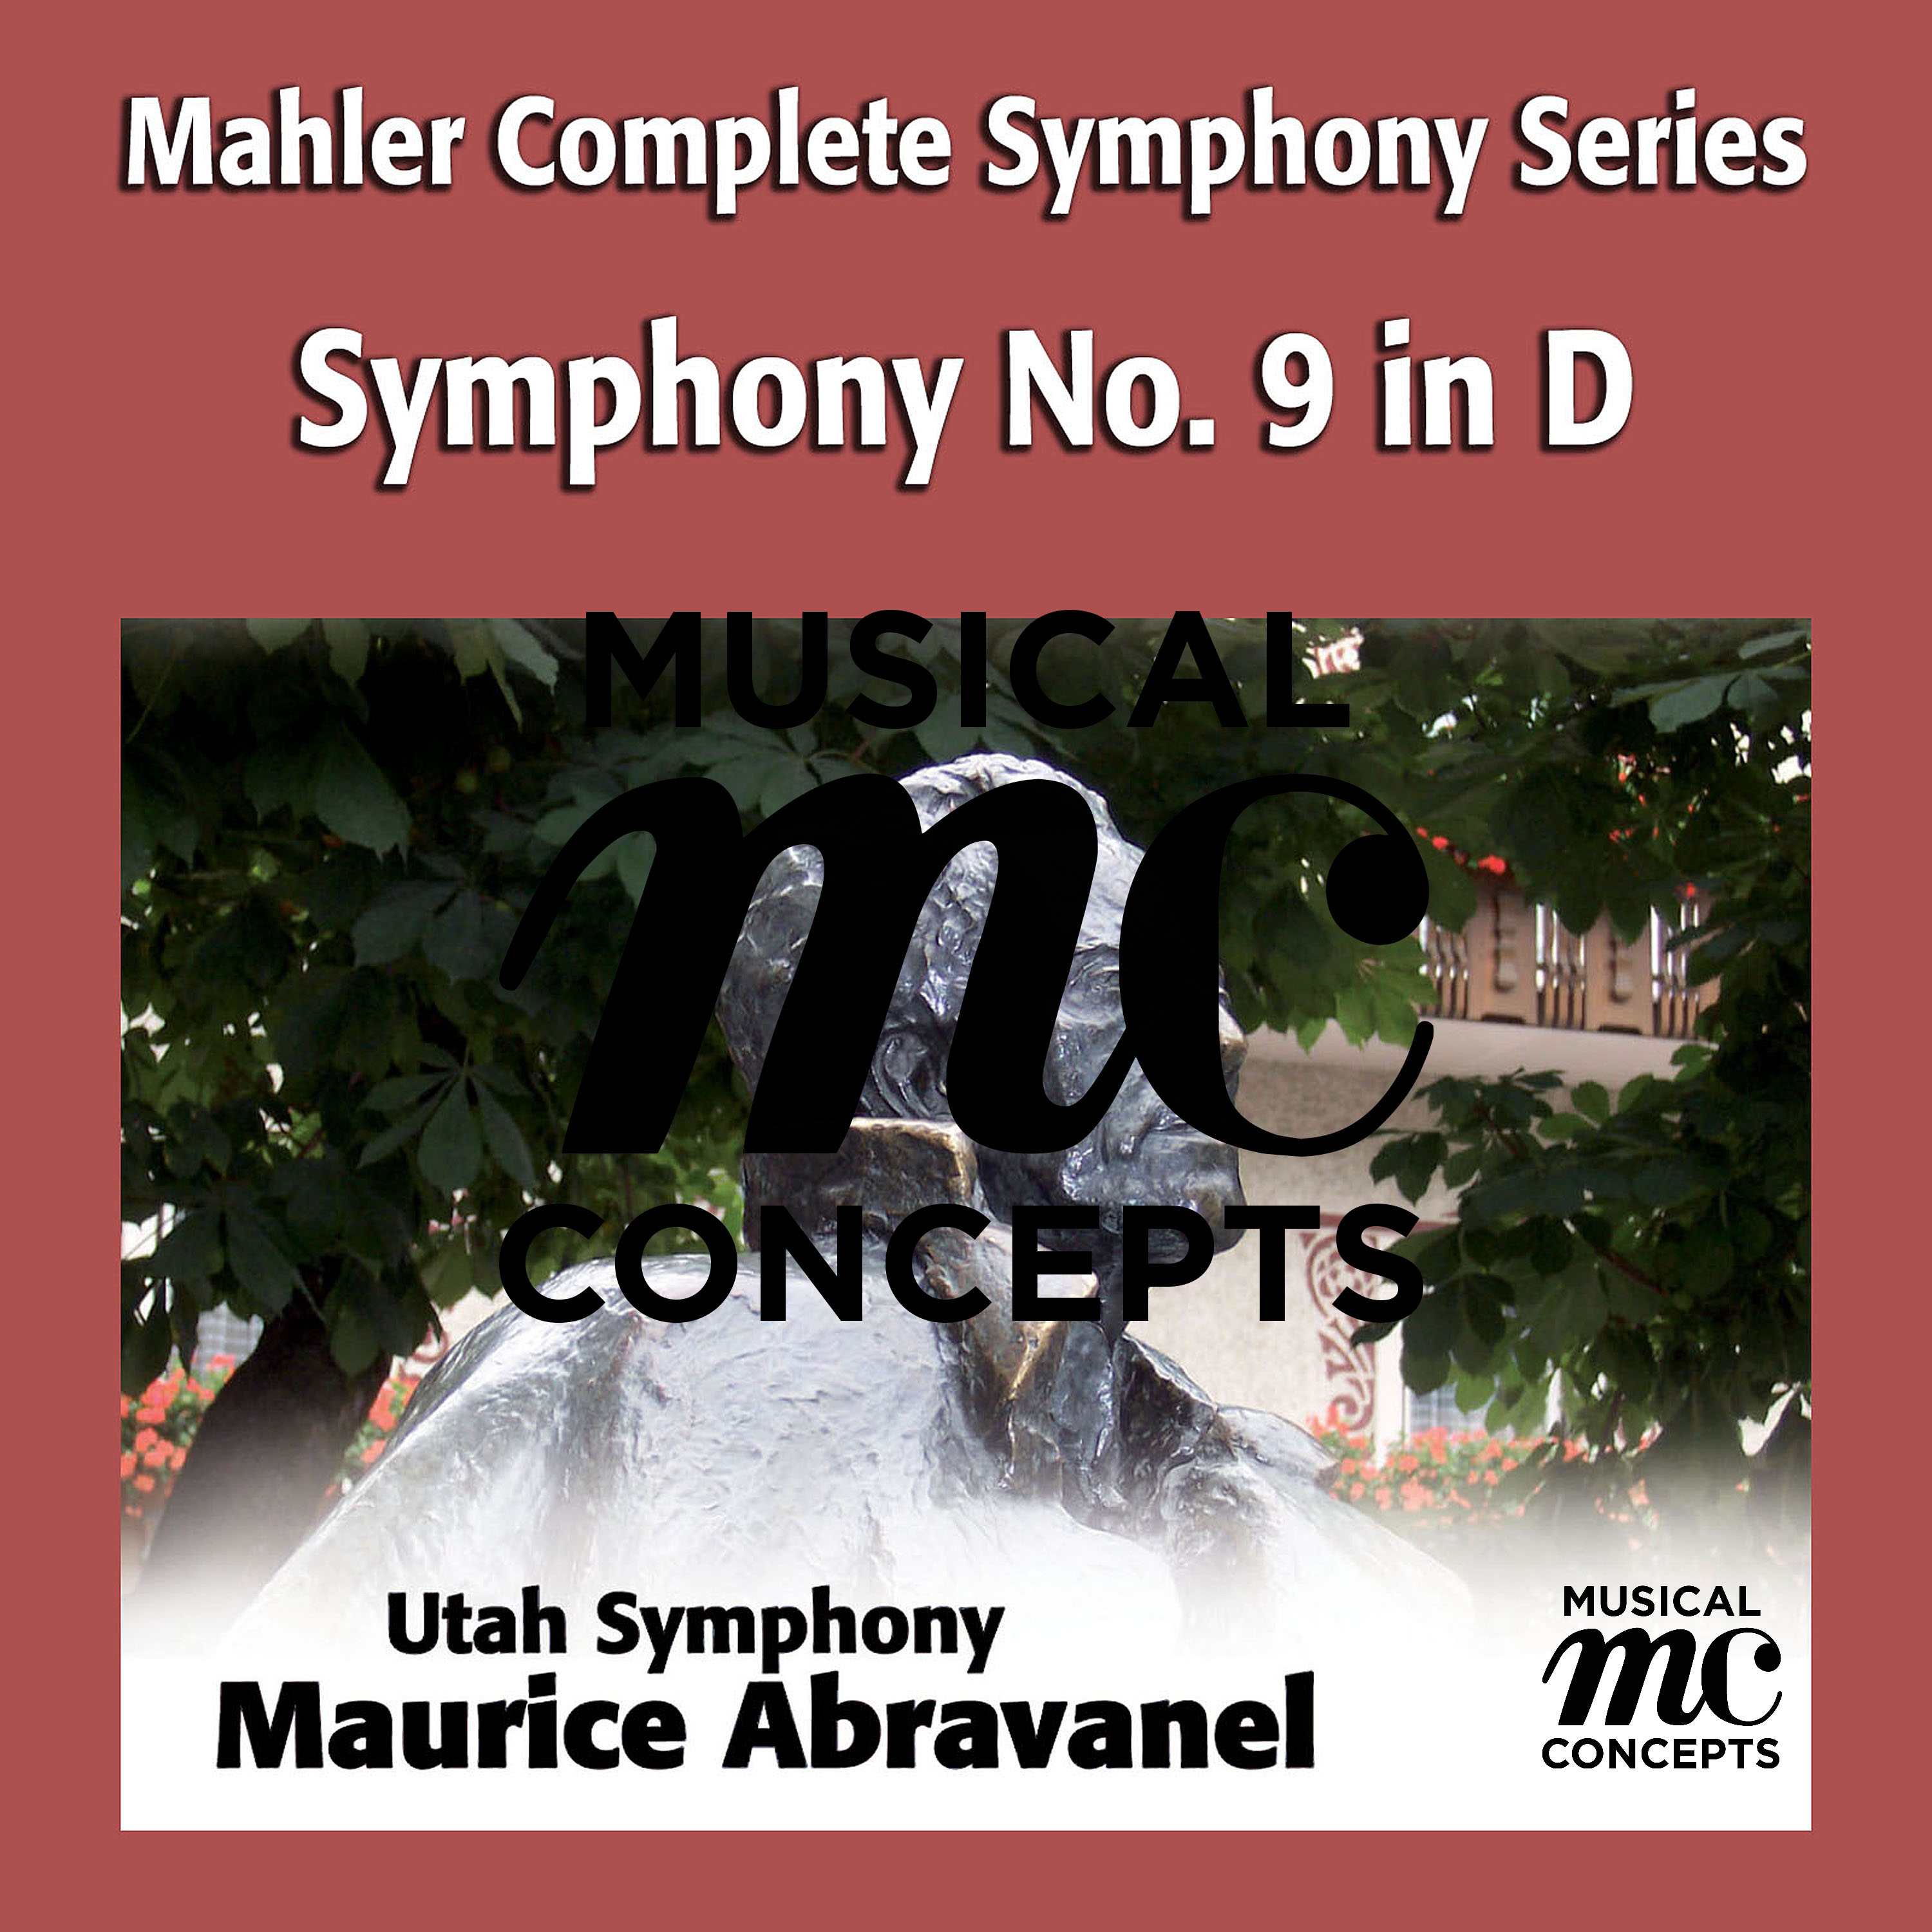 Symphony No. 9 in D Major: IV. Adagio - Sehr langsam und noch zuruckhaltend: bar 126